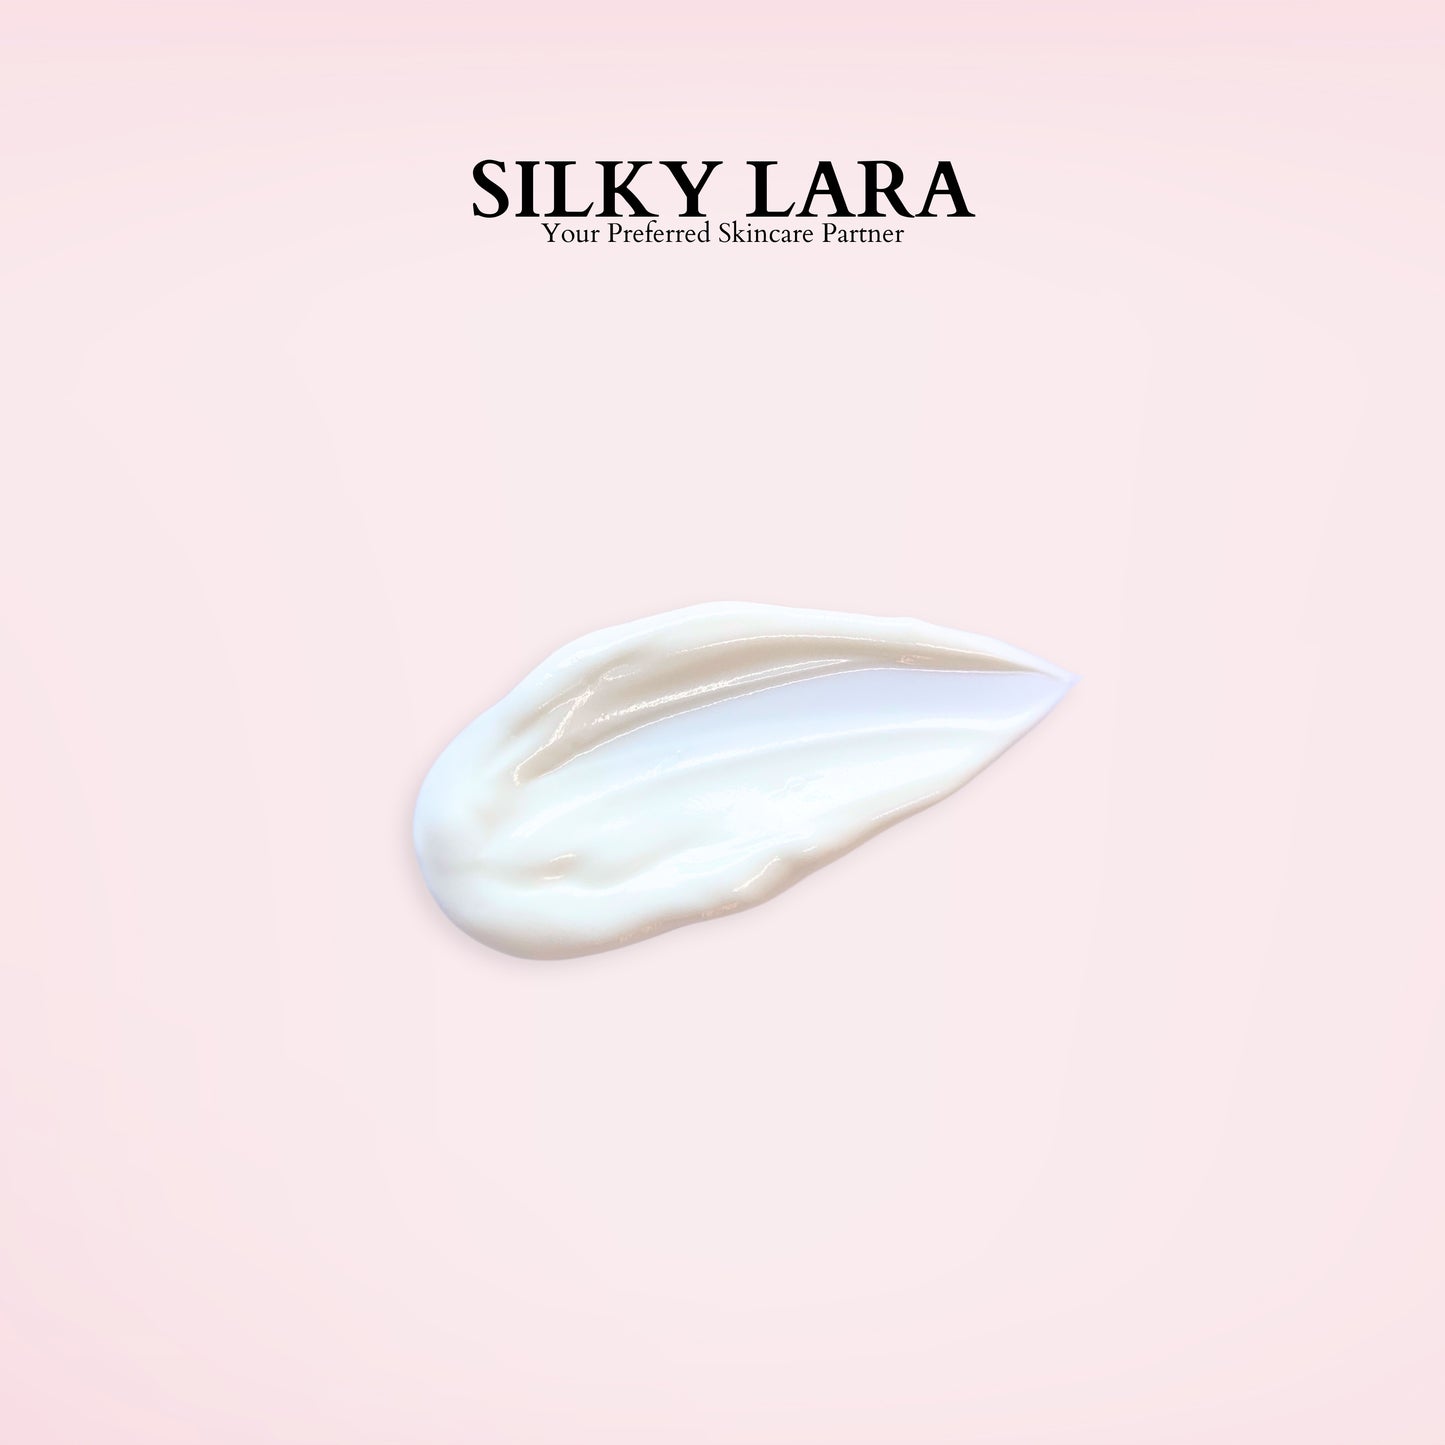 Silky Lara Sunscreen Lotion SPF40++ 50ML